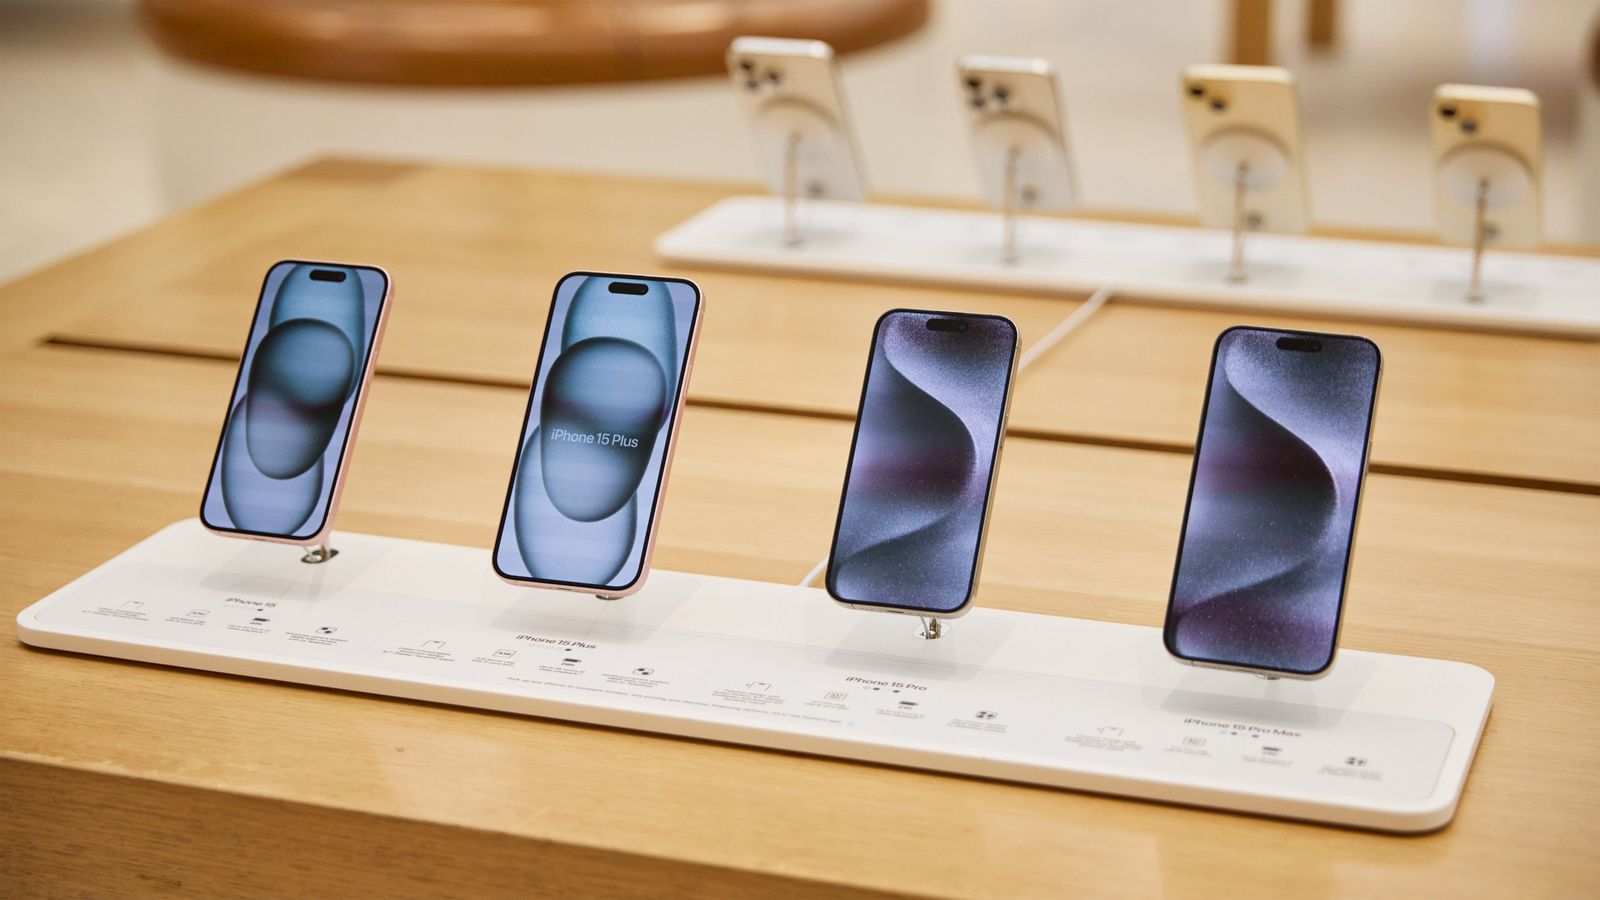 Desde iPhoneIslam.com, se muestran cinco teléfonos inteligentes en una tienda minorista, cada uno mostrando su pantalla con diferentes fondos de pantalla, incluidas las últimas actualizaciones de noticias.